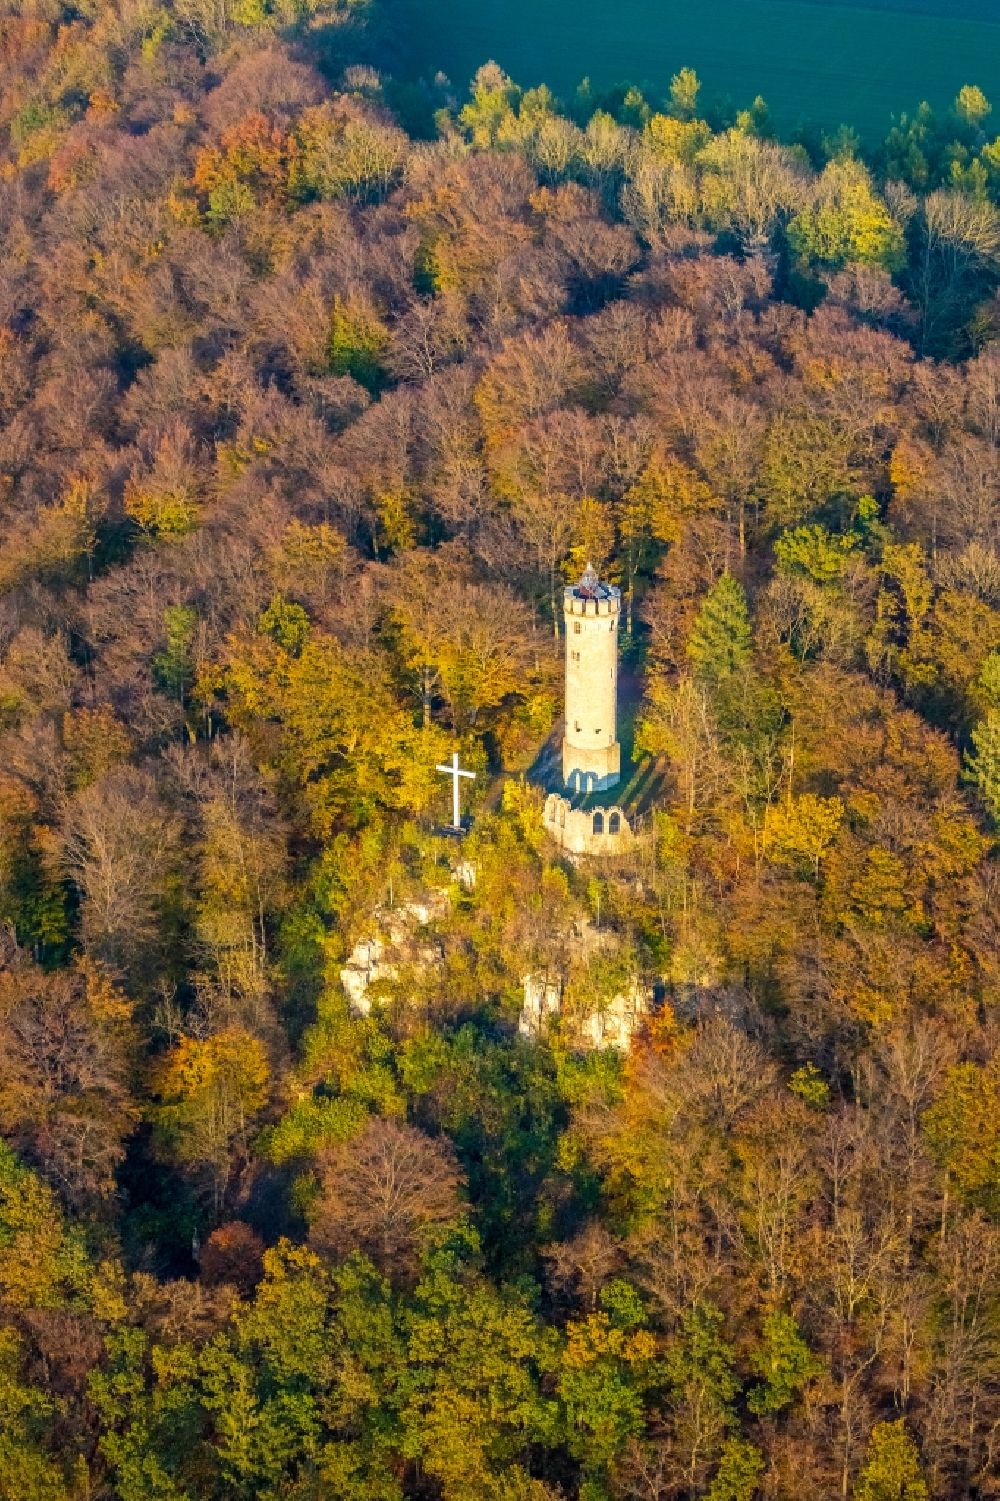 Marsberg von oben - Bauwerk des Aussichtsturmes Bilsteinturm in Marsberg im Bundesland Nordrhein-Westfalen, Deutschland